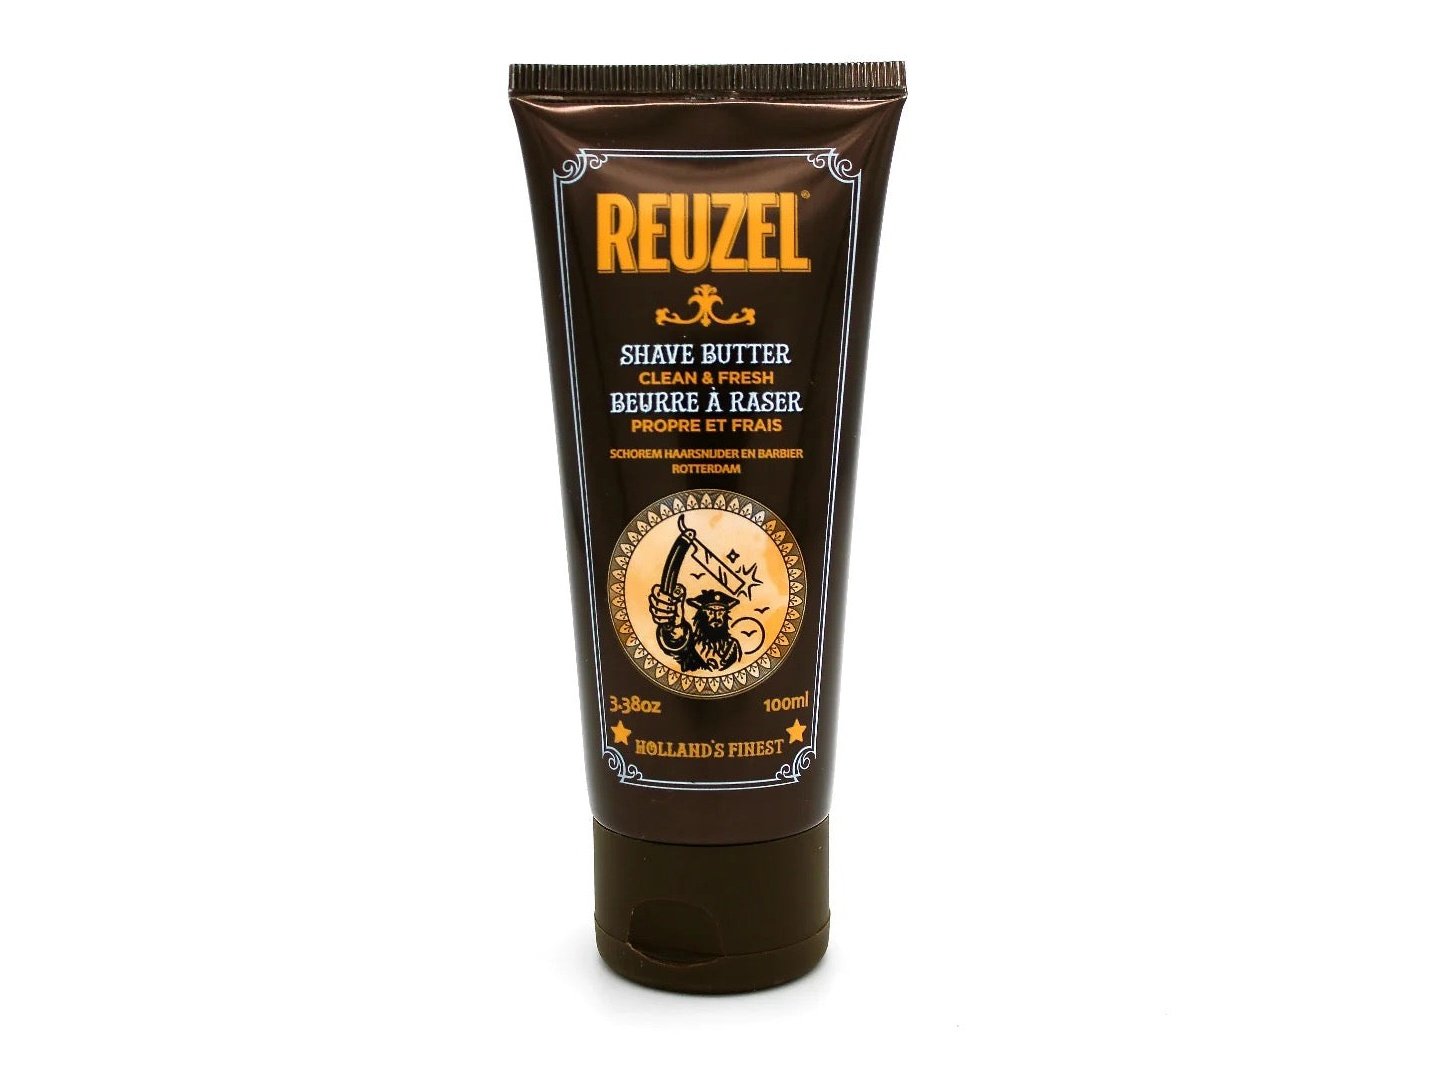 Reuzel Clean & Fresh Shave Butter, 3.38 oz.